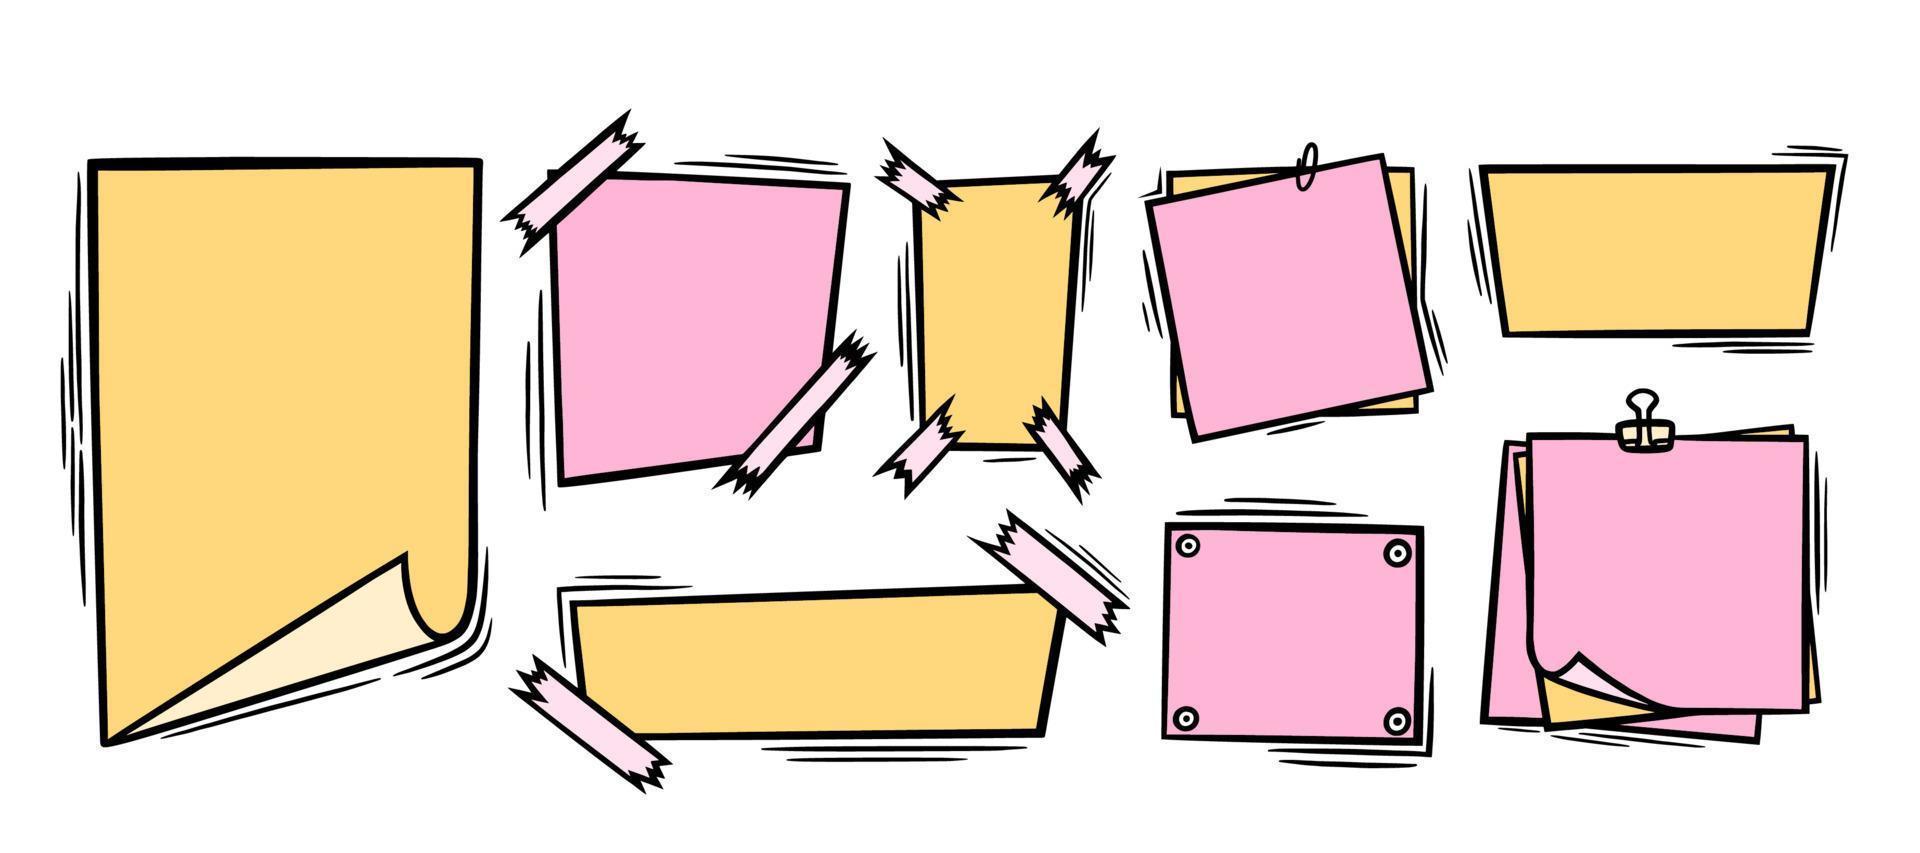 hojas de papel de fideos con clip, cinta adhesiva y alfileres. páginas de papel en blanco rosas y amarillas para notas y mensajes. ilustración de vector de garabato coloreado